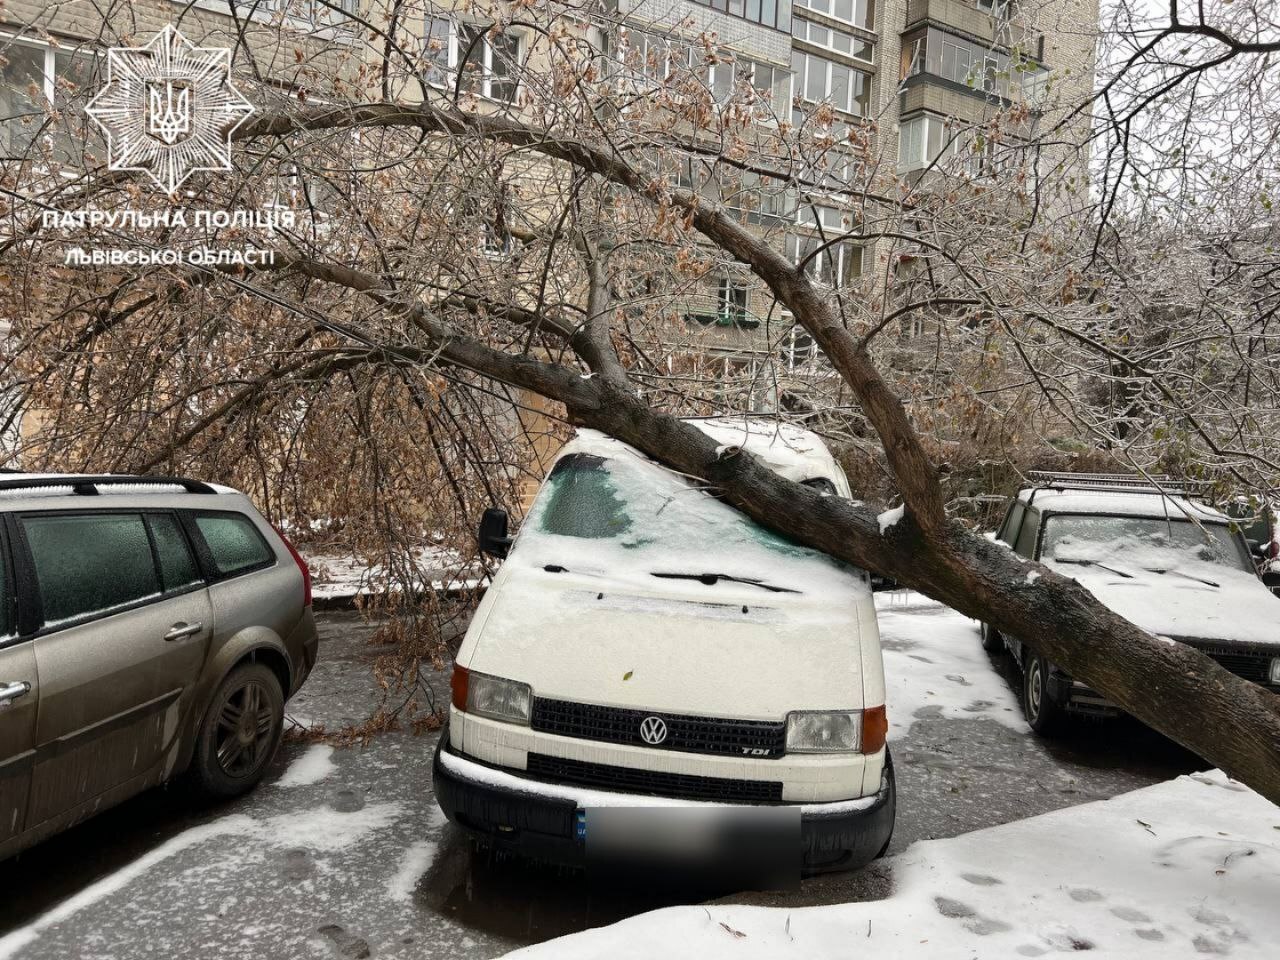 Через негоду і падіння дерев у Львові перекриті вулиці та потрощені авто